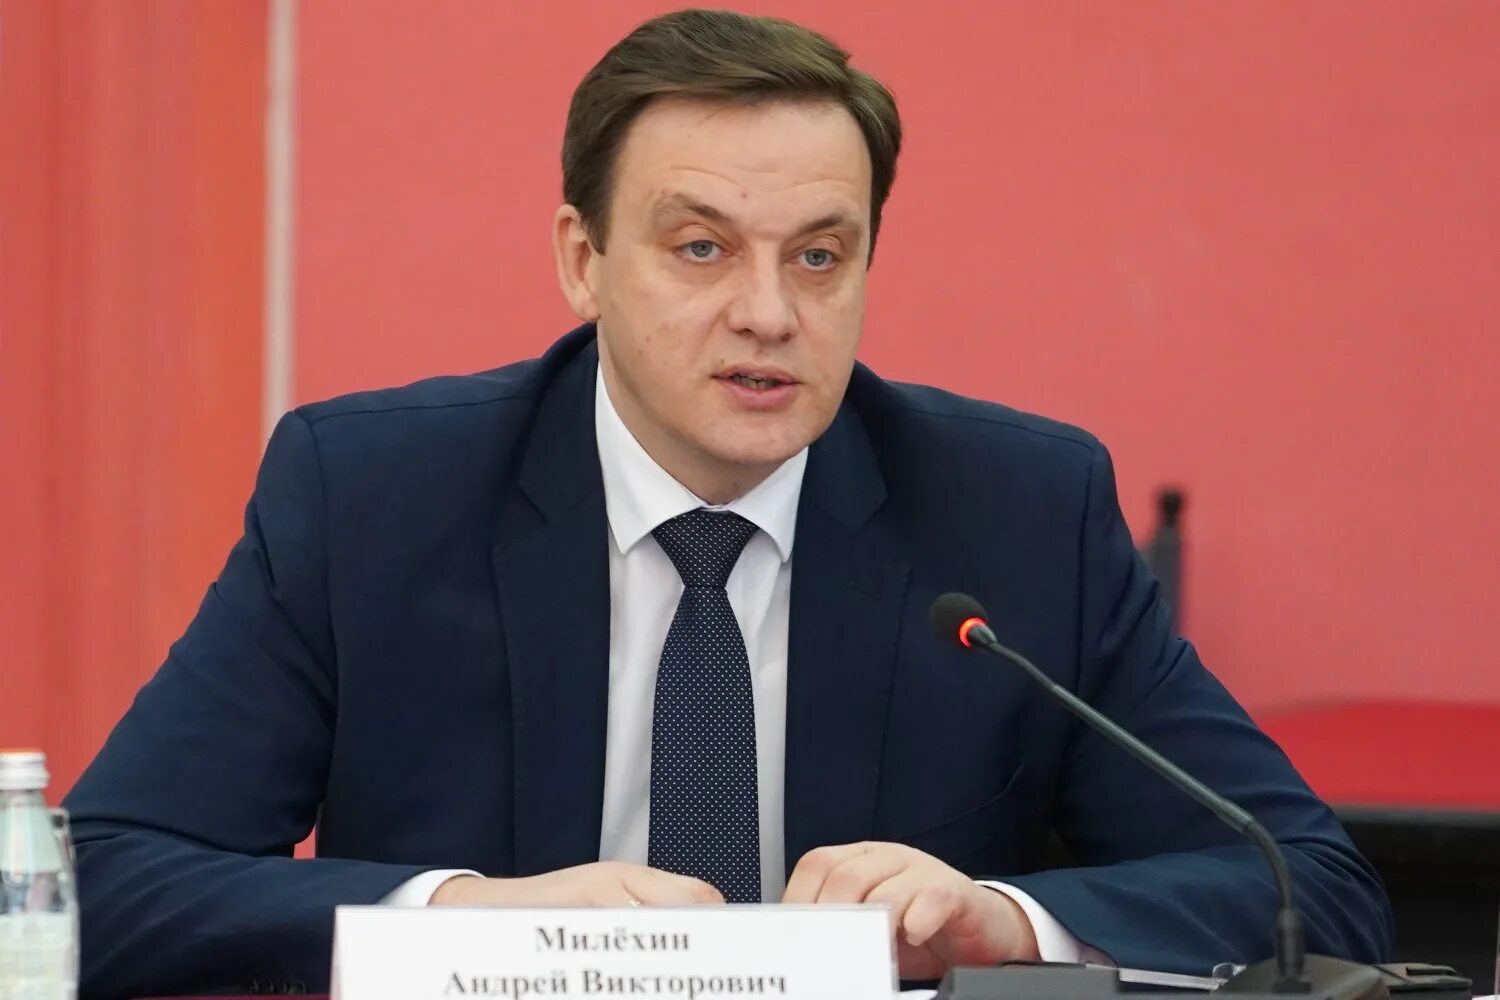 Министр образования снят с должности. Министр образования Белгородской области Милехин.